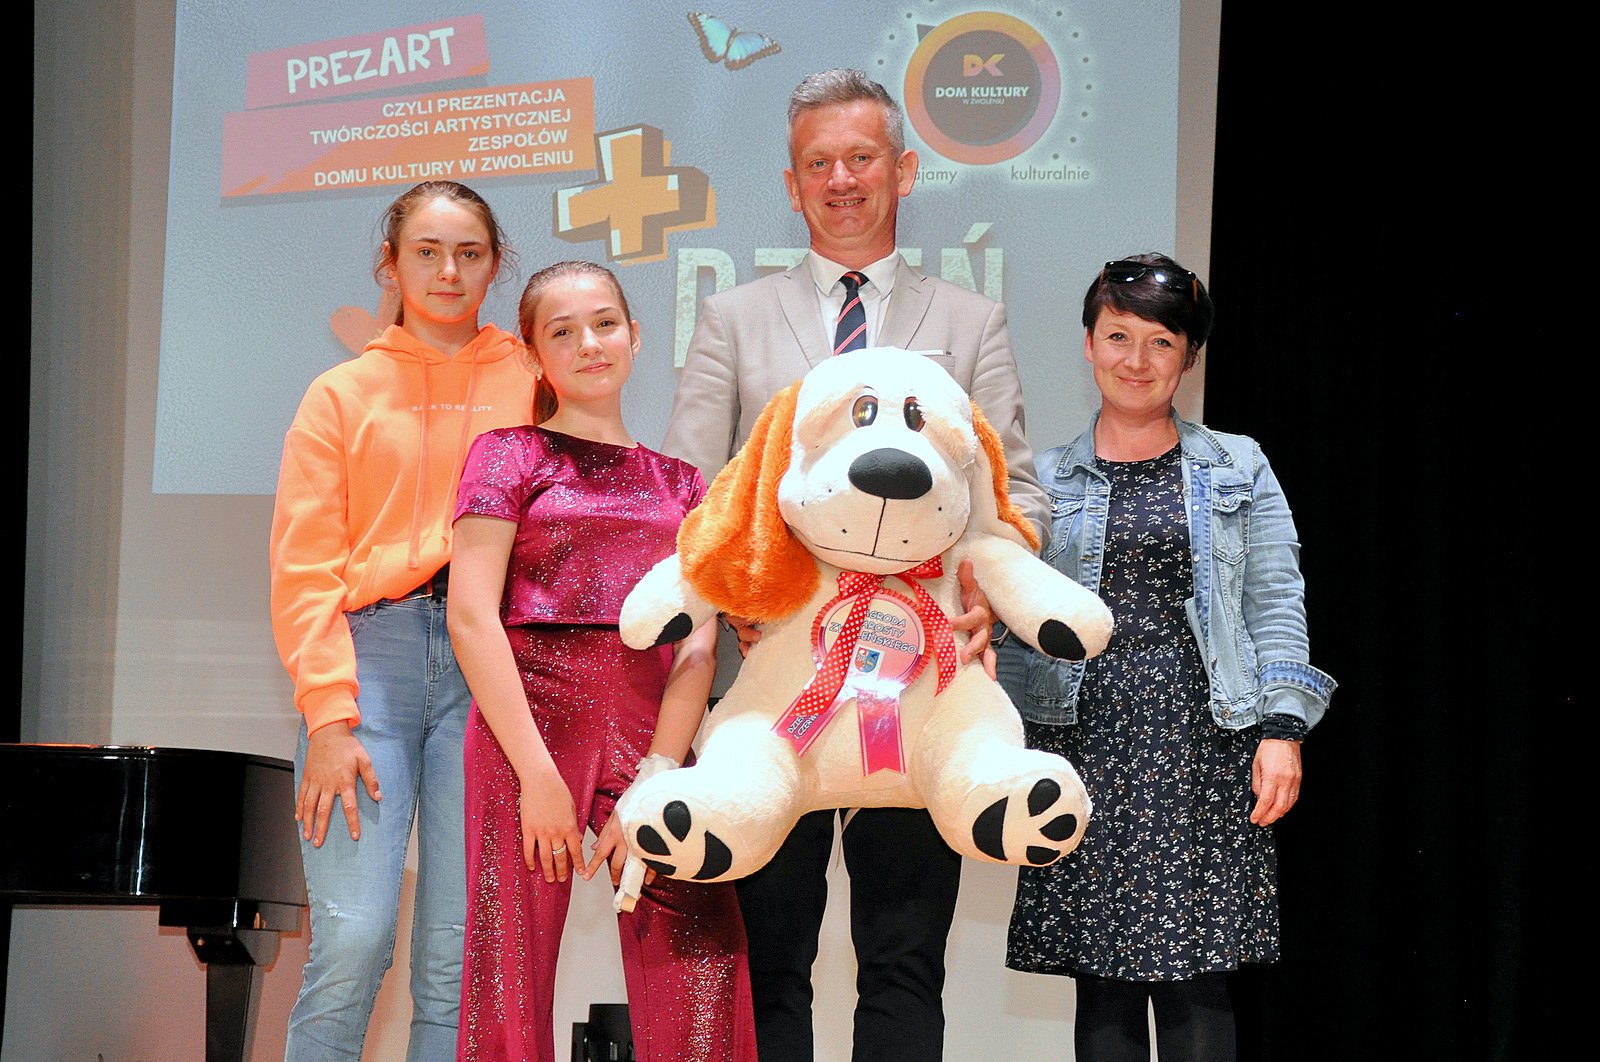 Sekretarz gminy Zwoleń oraz radny Rady Powiatu w Zwoleniu Mirosław Chołuj złożył dzieciom życzenia oraz wręczał nagrody 